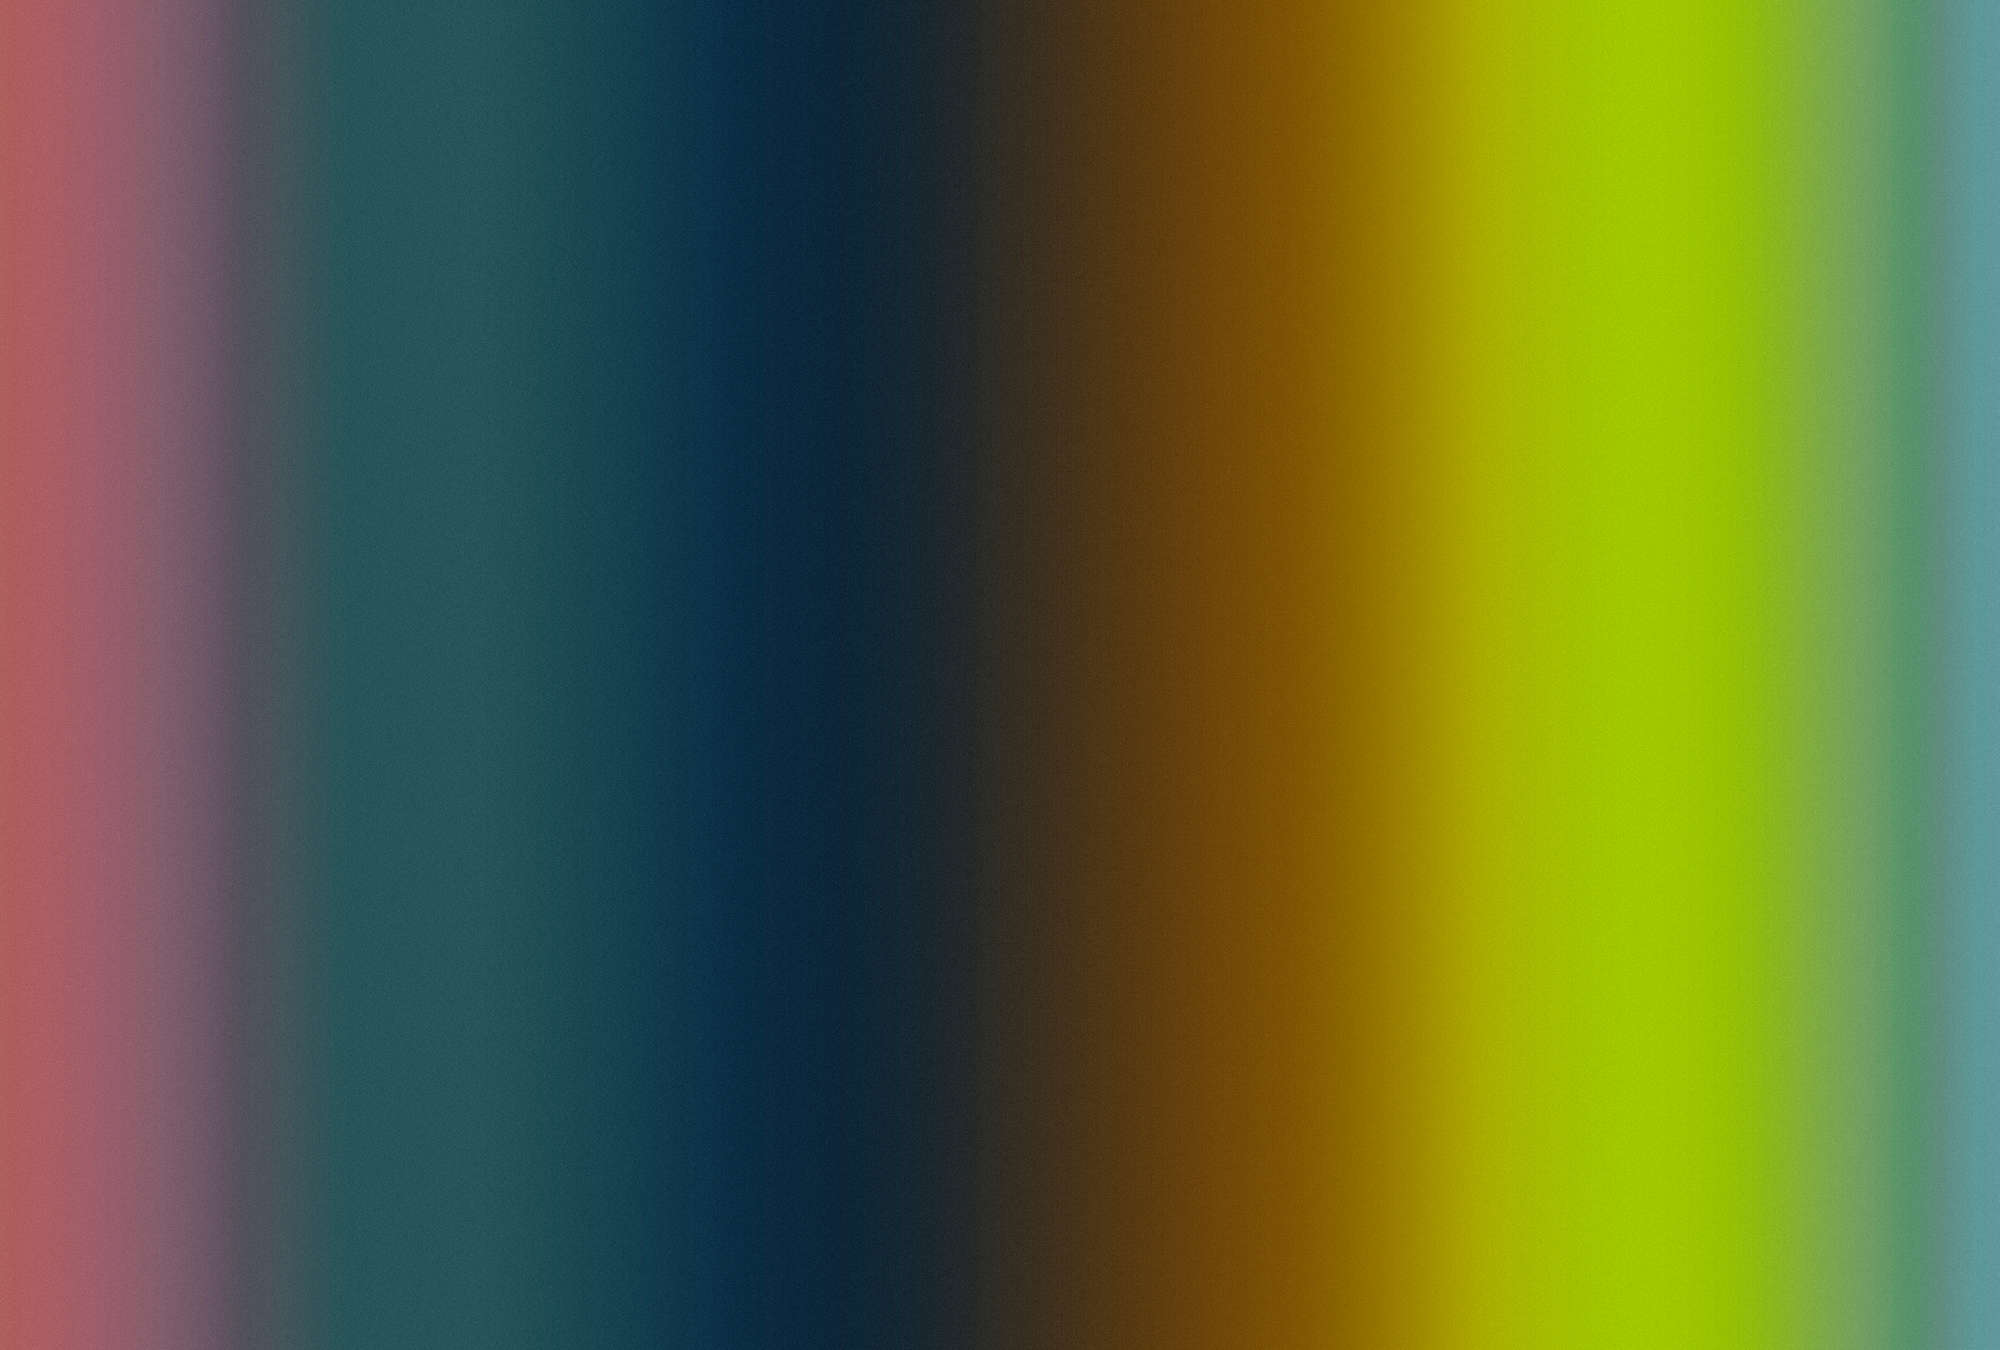             Over the Rainbow 1 - Muurschildering kleurenspectrum regenboog modern
        